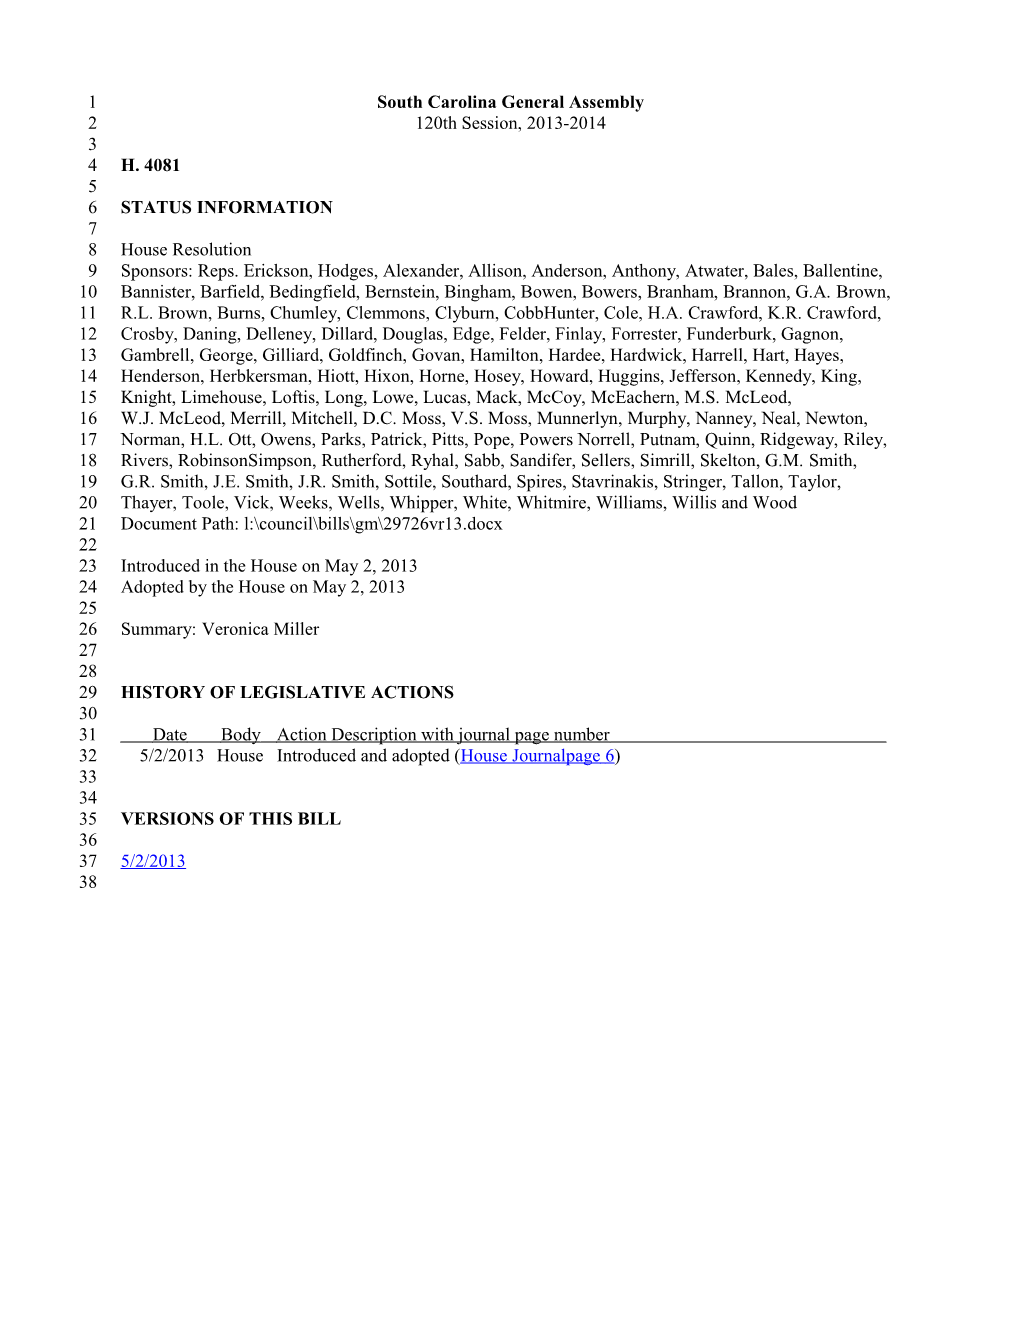 2013-2014 Bill 4081: Veronica Miller - South Carolina Legislature Online